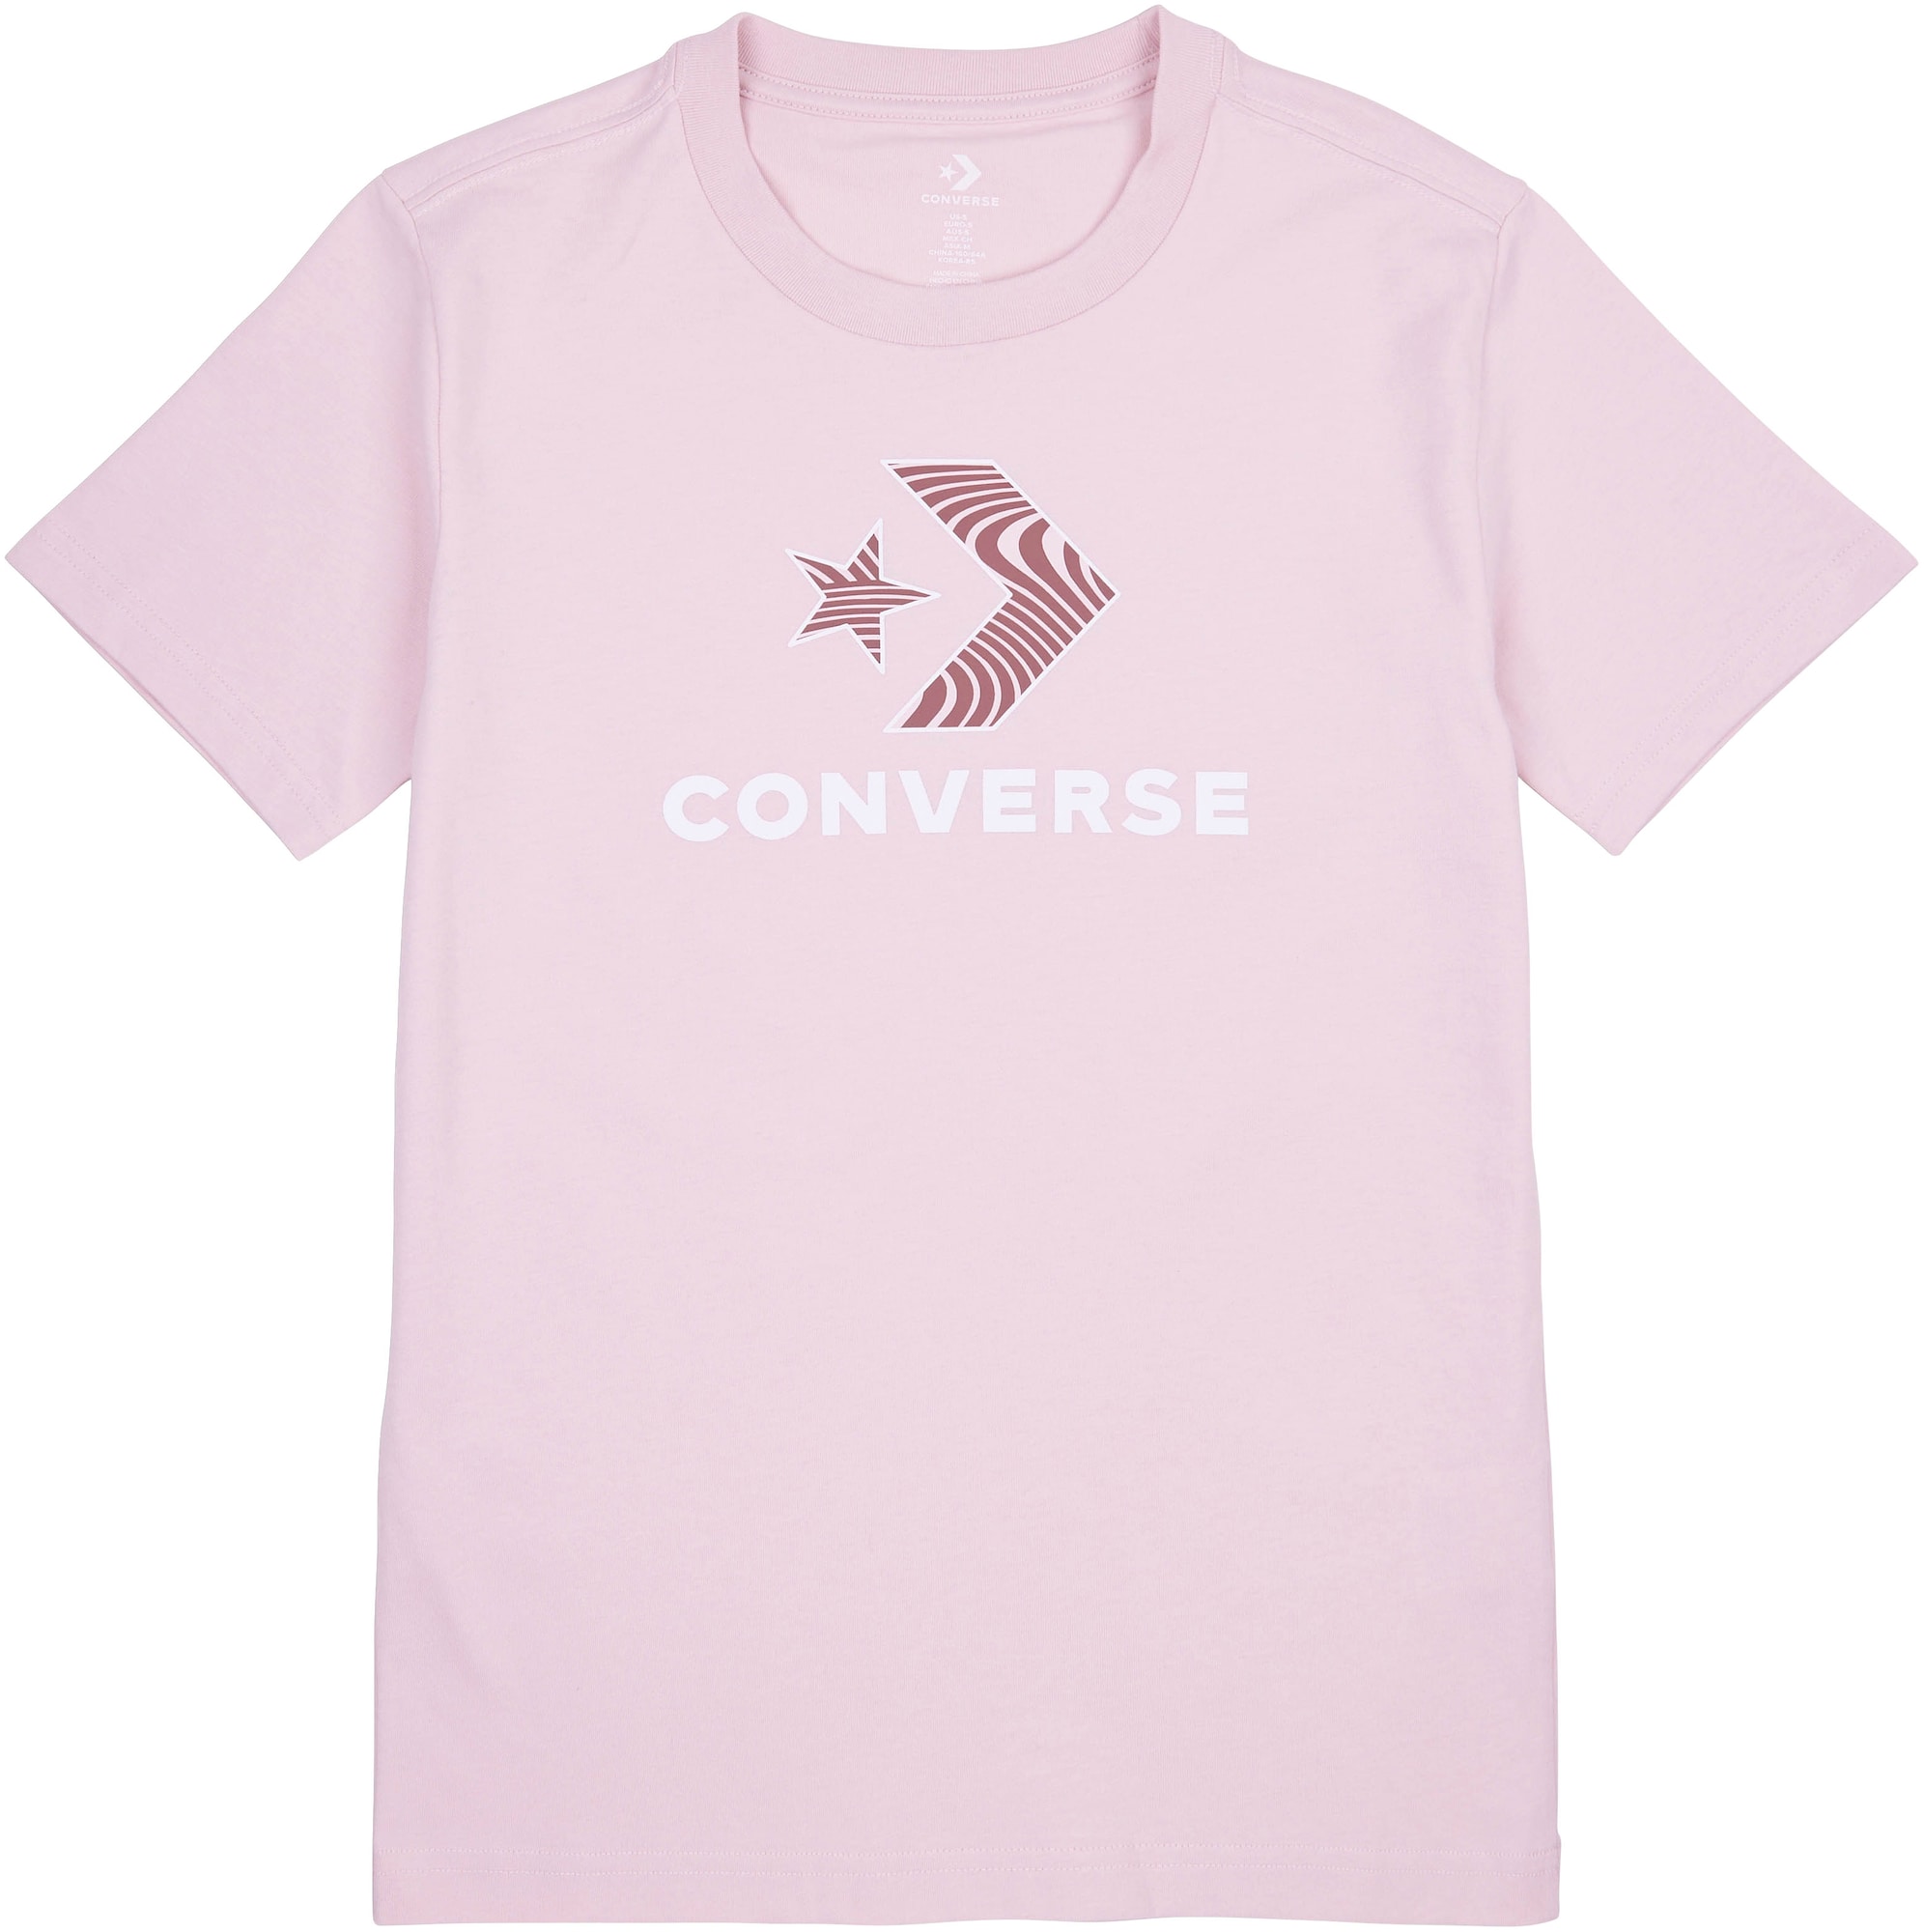 CONVERSE Shirt ros / wei / braun